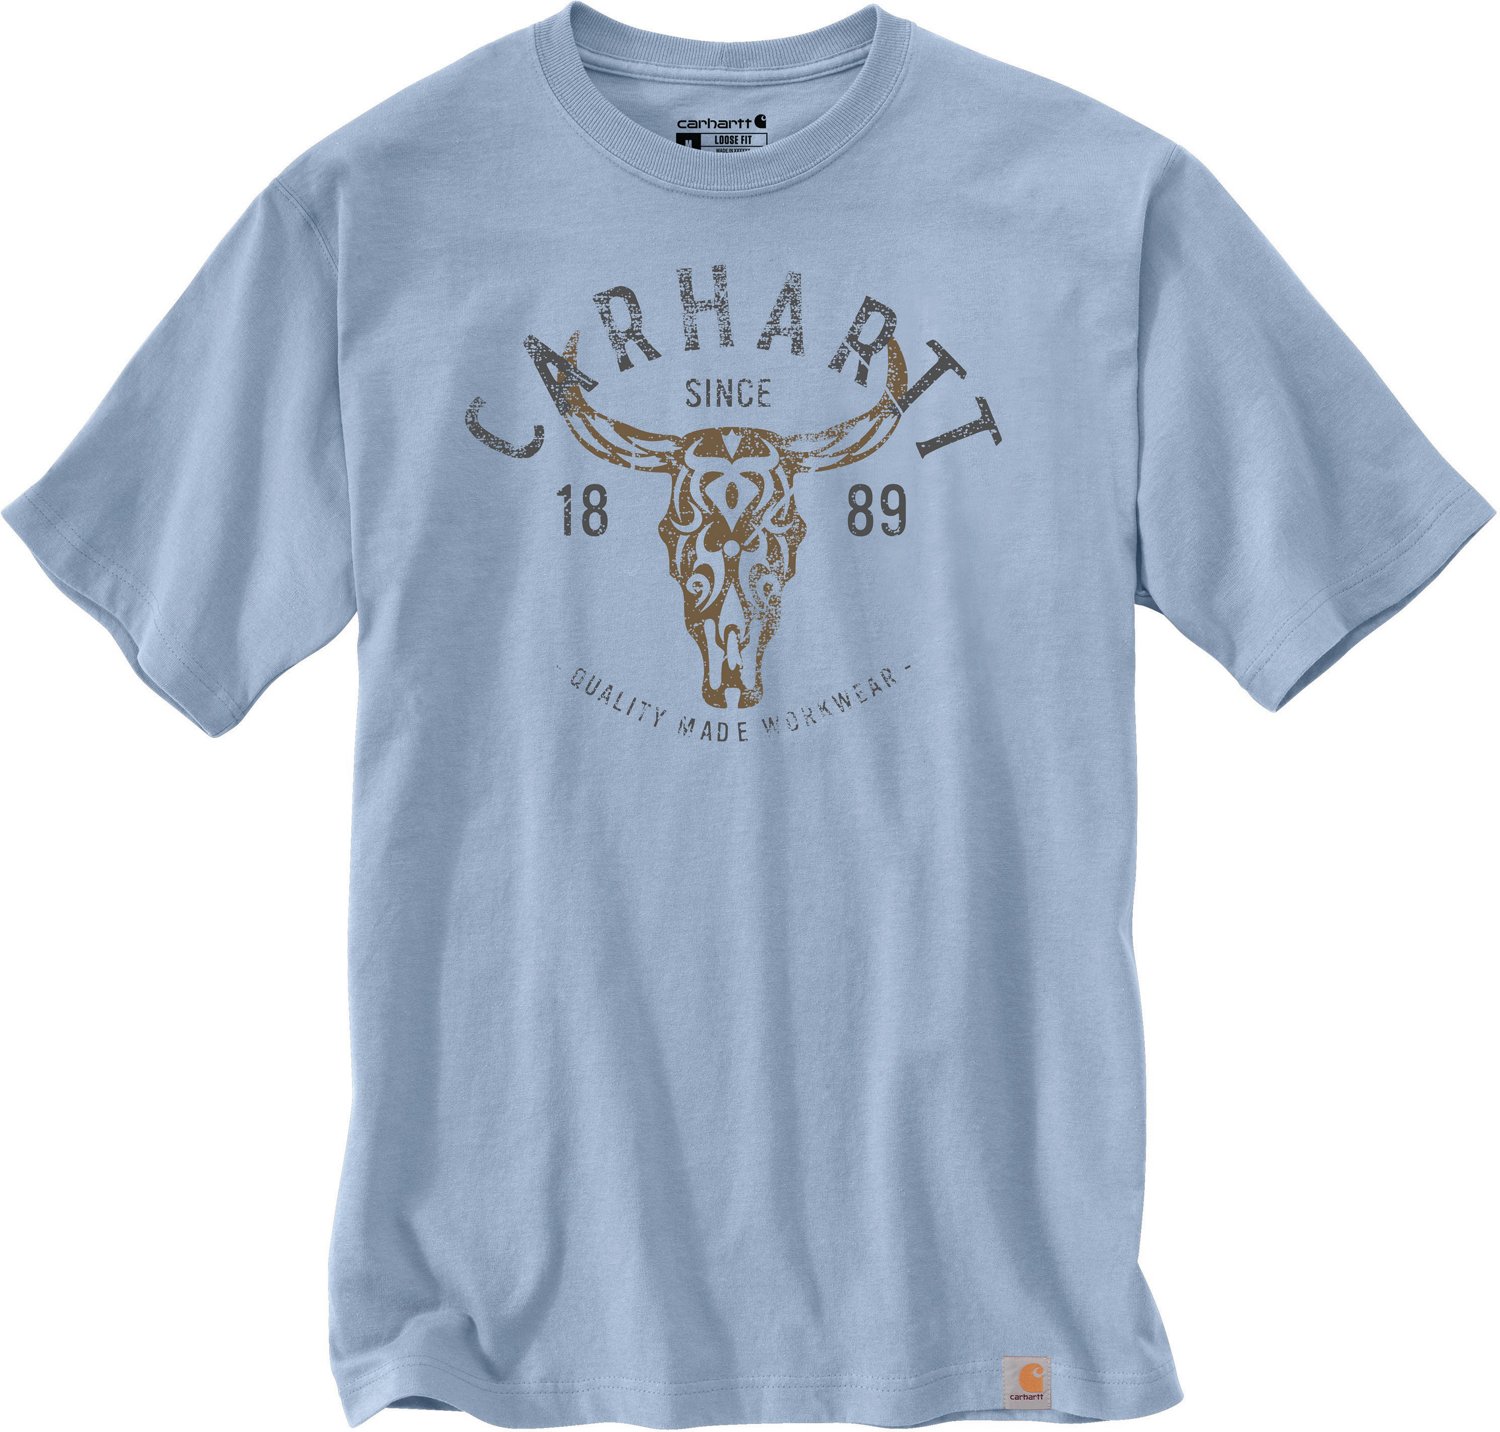 Carhartt Mens Montana Relaxed Fit Heavyweight Longhorn Graphic T-shirt